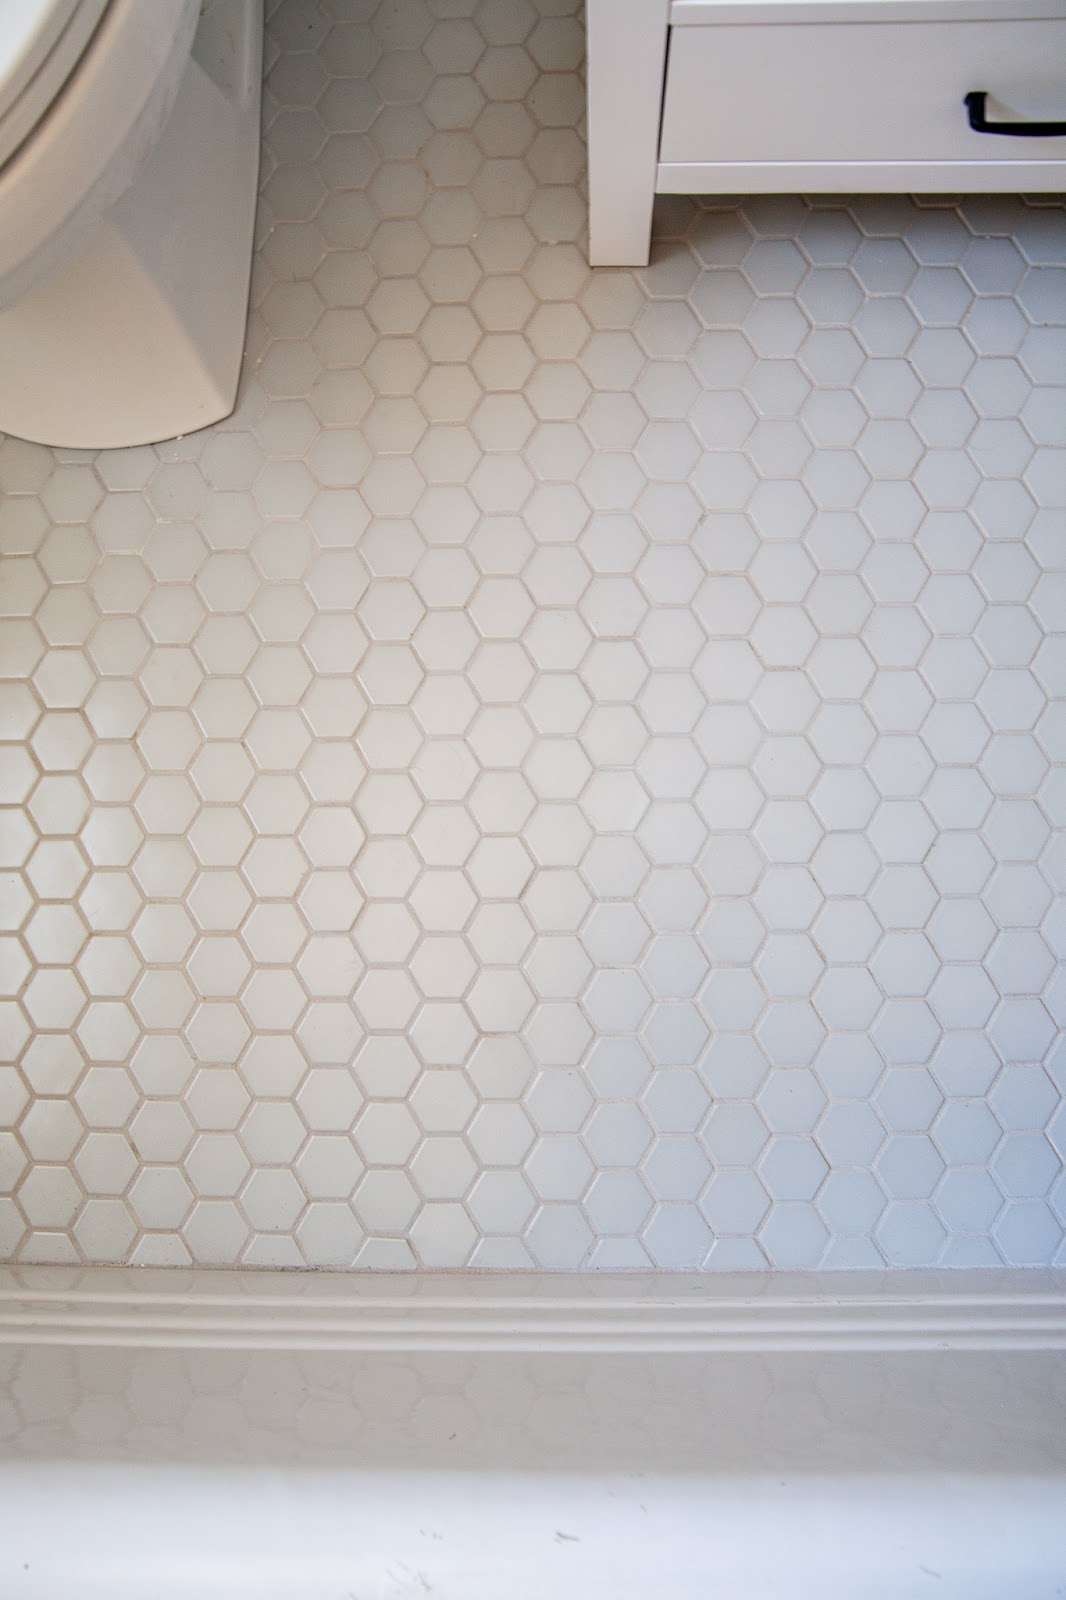 How To Lay Mosaic Tile Flooring Week, Small Hexagon Bathroom Floor Tiles